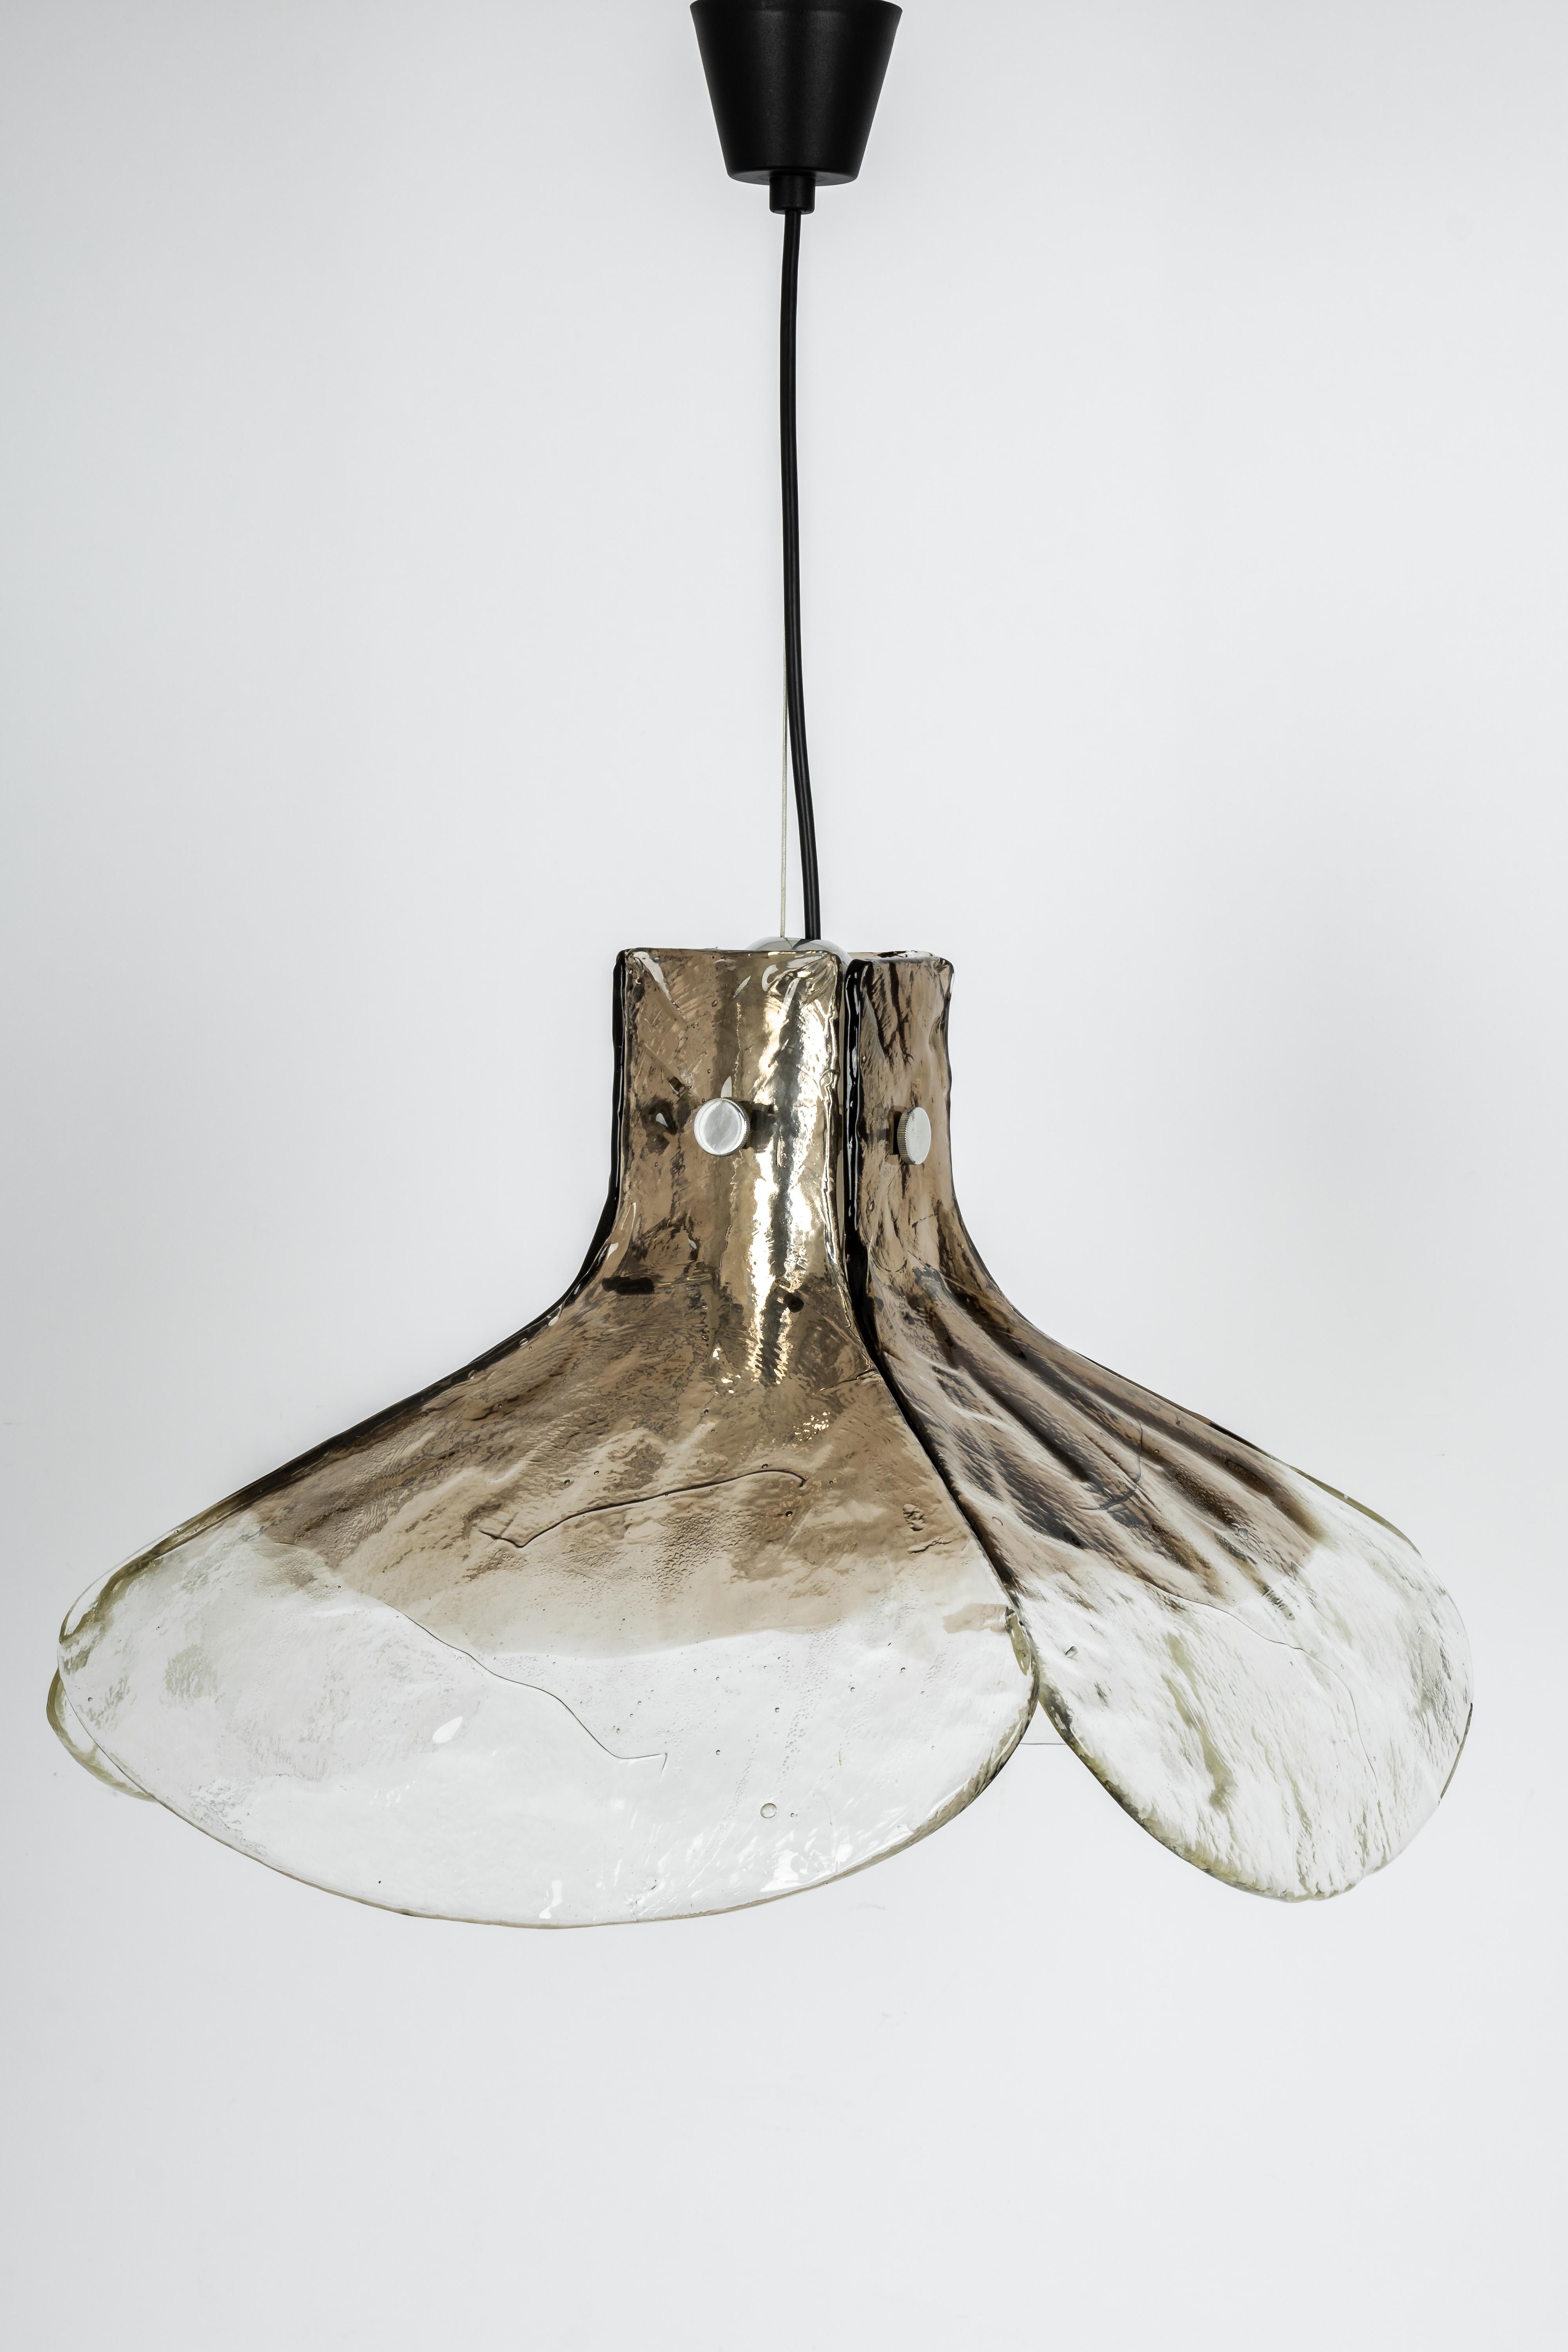 Un étonnant grand lustre en verre fumé de Murano conçu par Kalmar, en Autriche, fabriqué dans les années 1960.
Le lustre est composé de 4 éléments épais en verre de Murano fixés à une structure métallique.

De haute qualité et en très bon état.